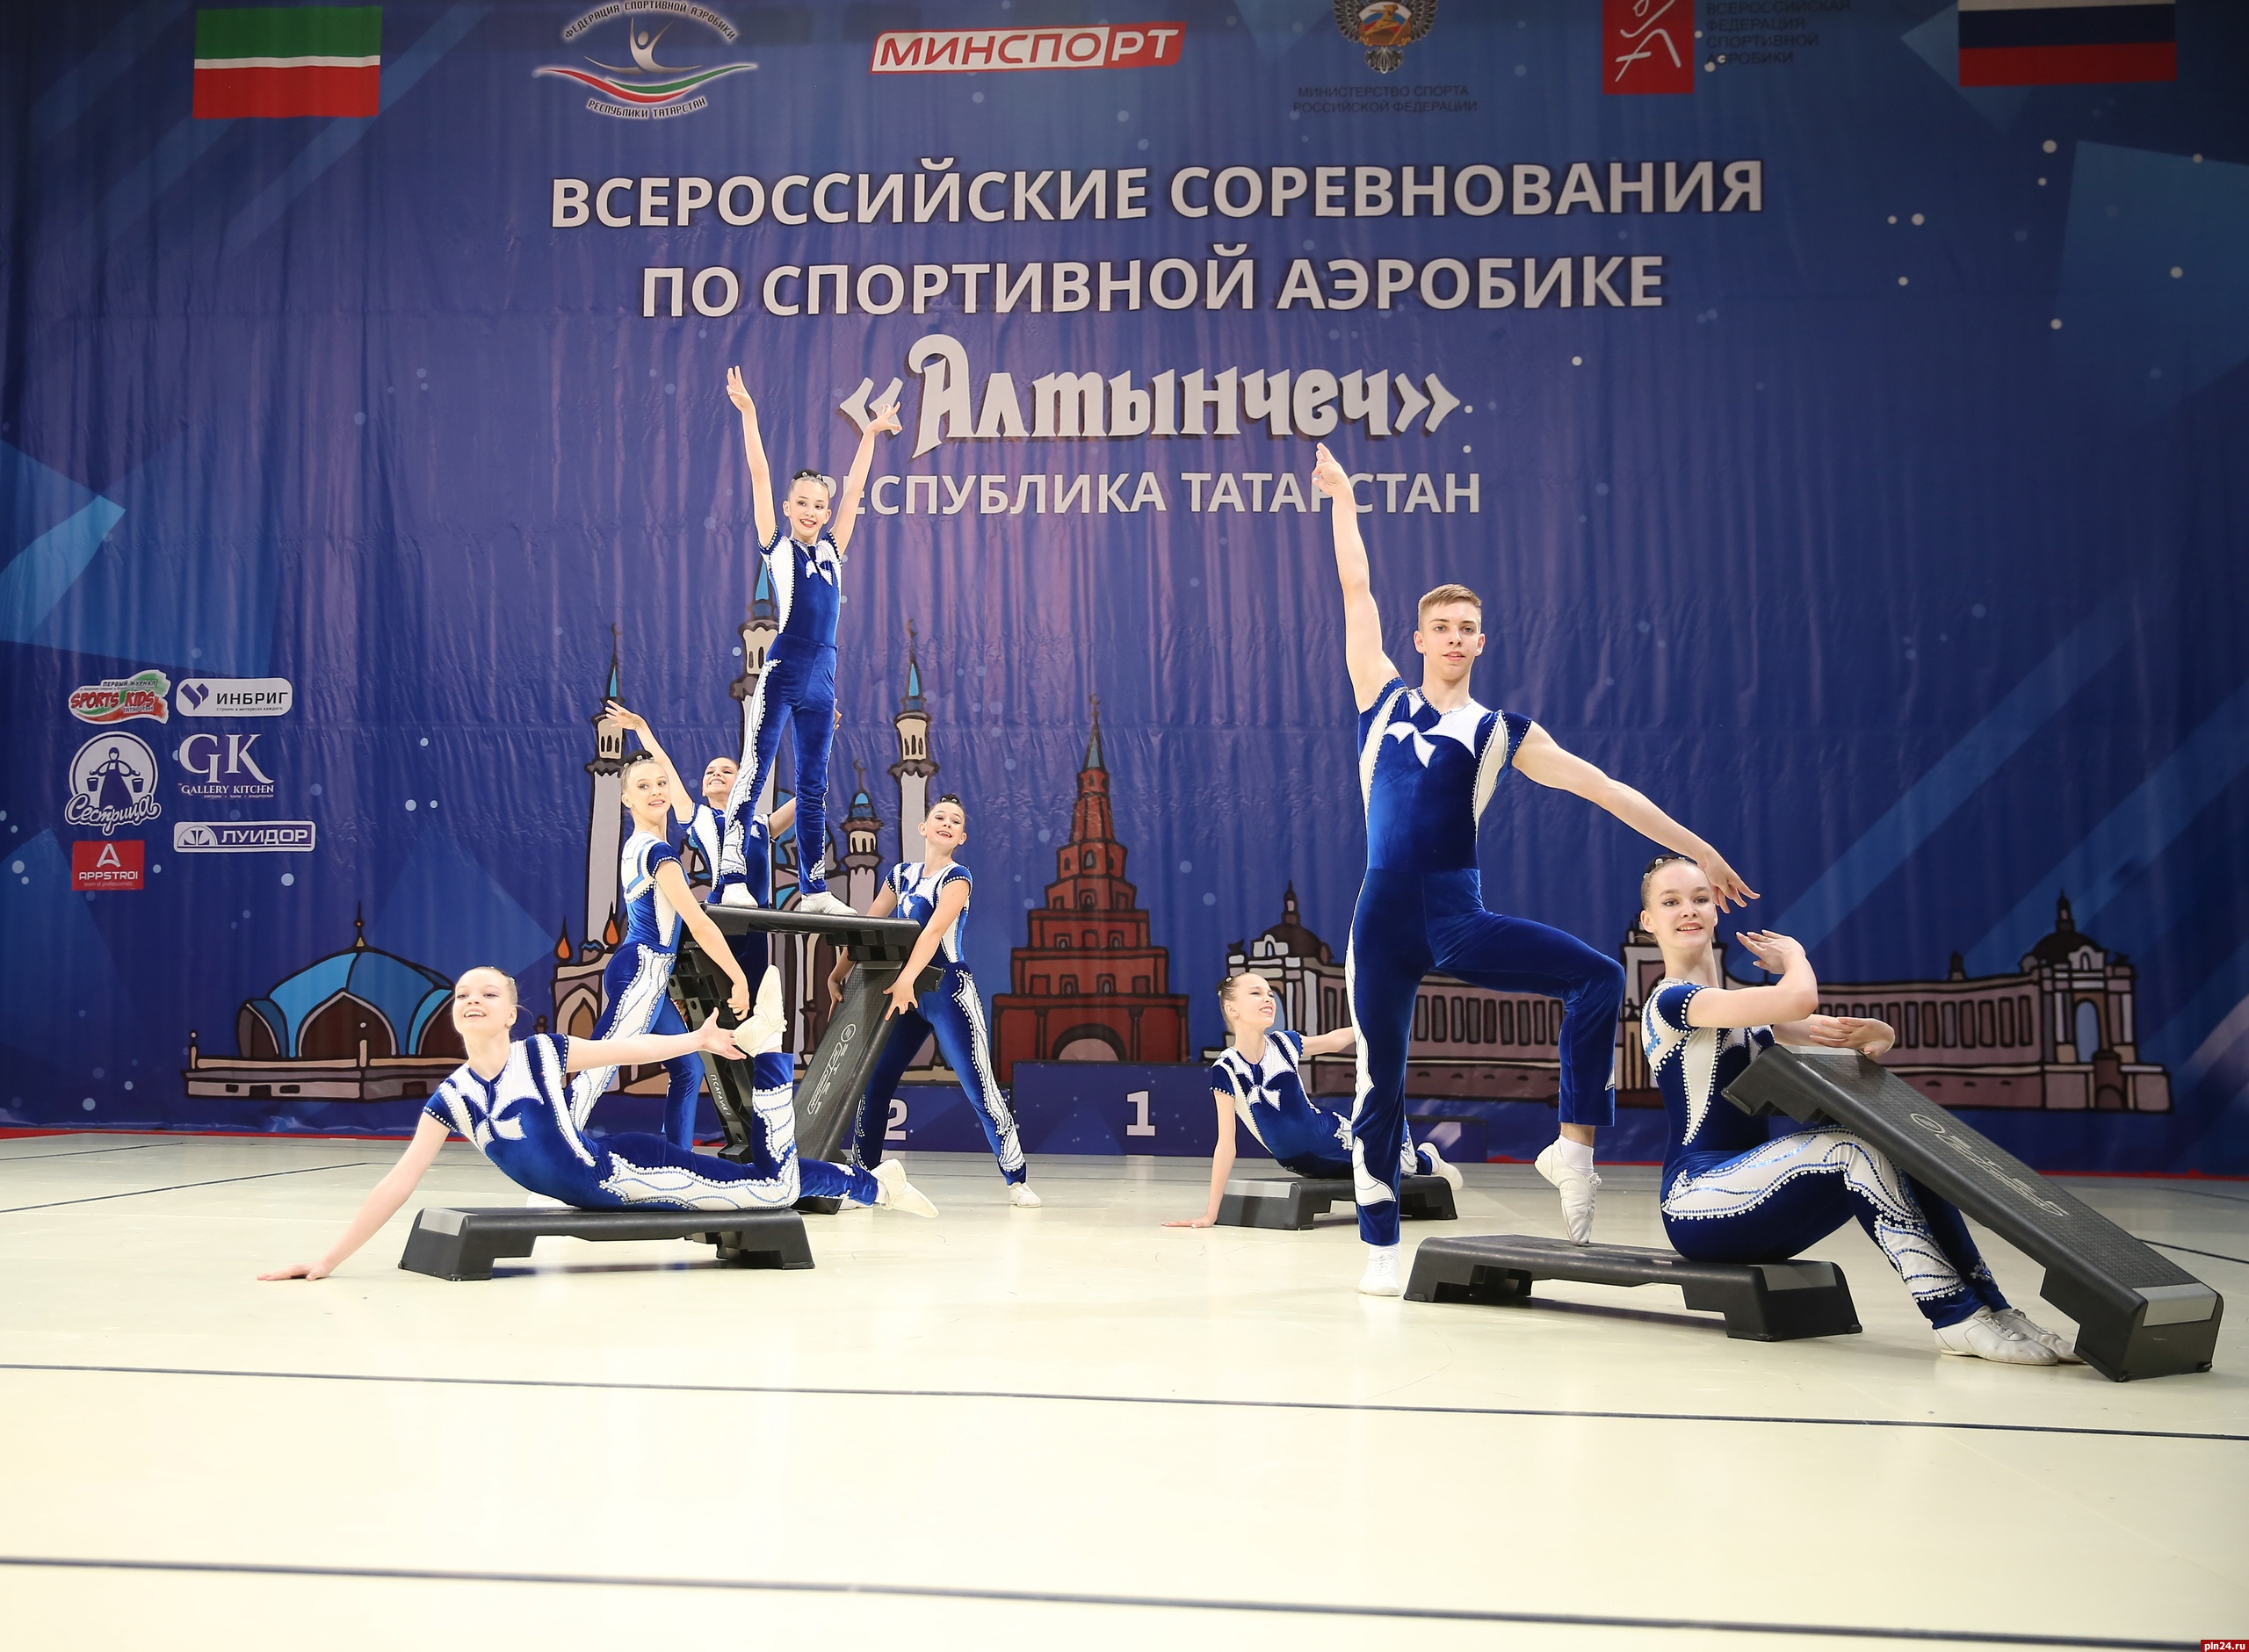 Псковички получили бронзовые медали на всероссийских соревнованиях по спортивной аэробике